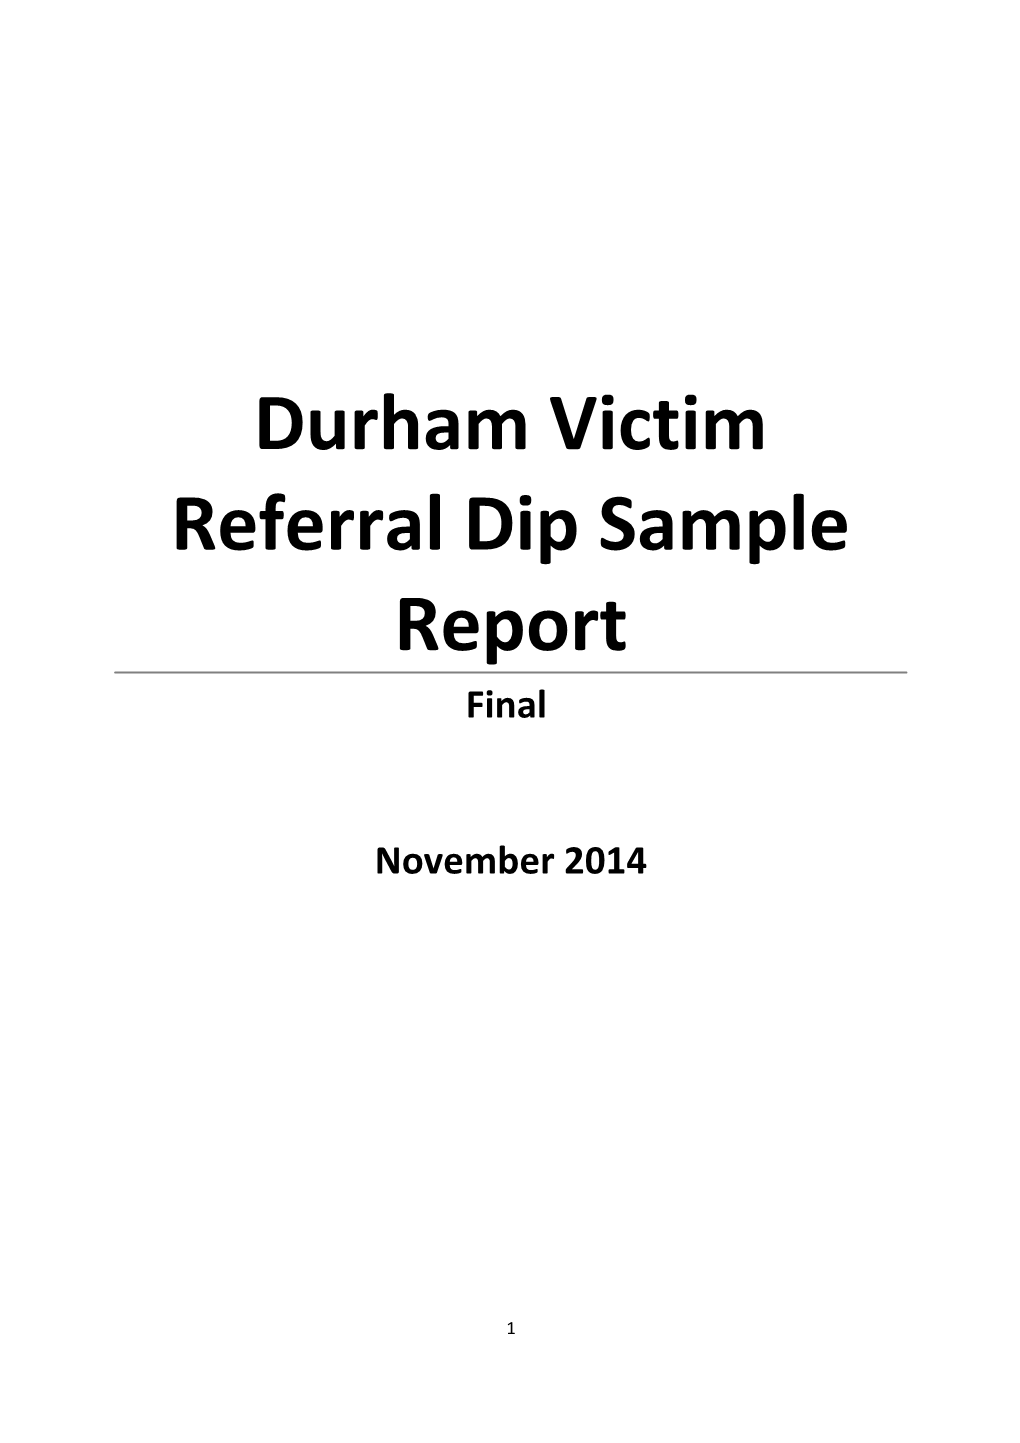 Durham Victim Referral Dip Sample Report